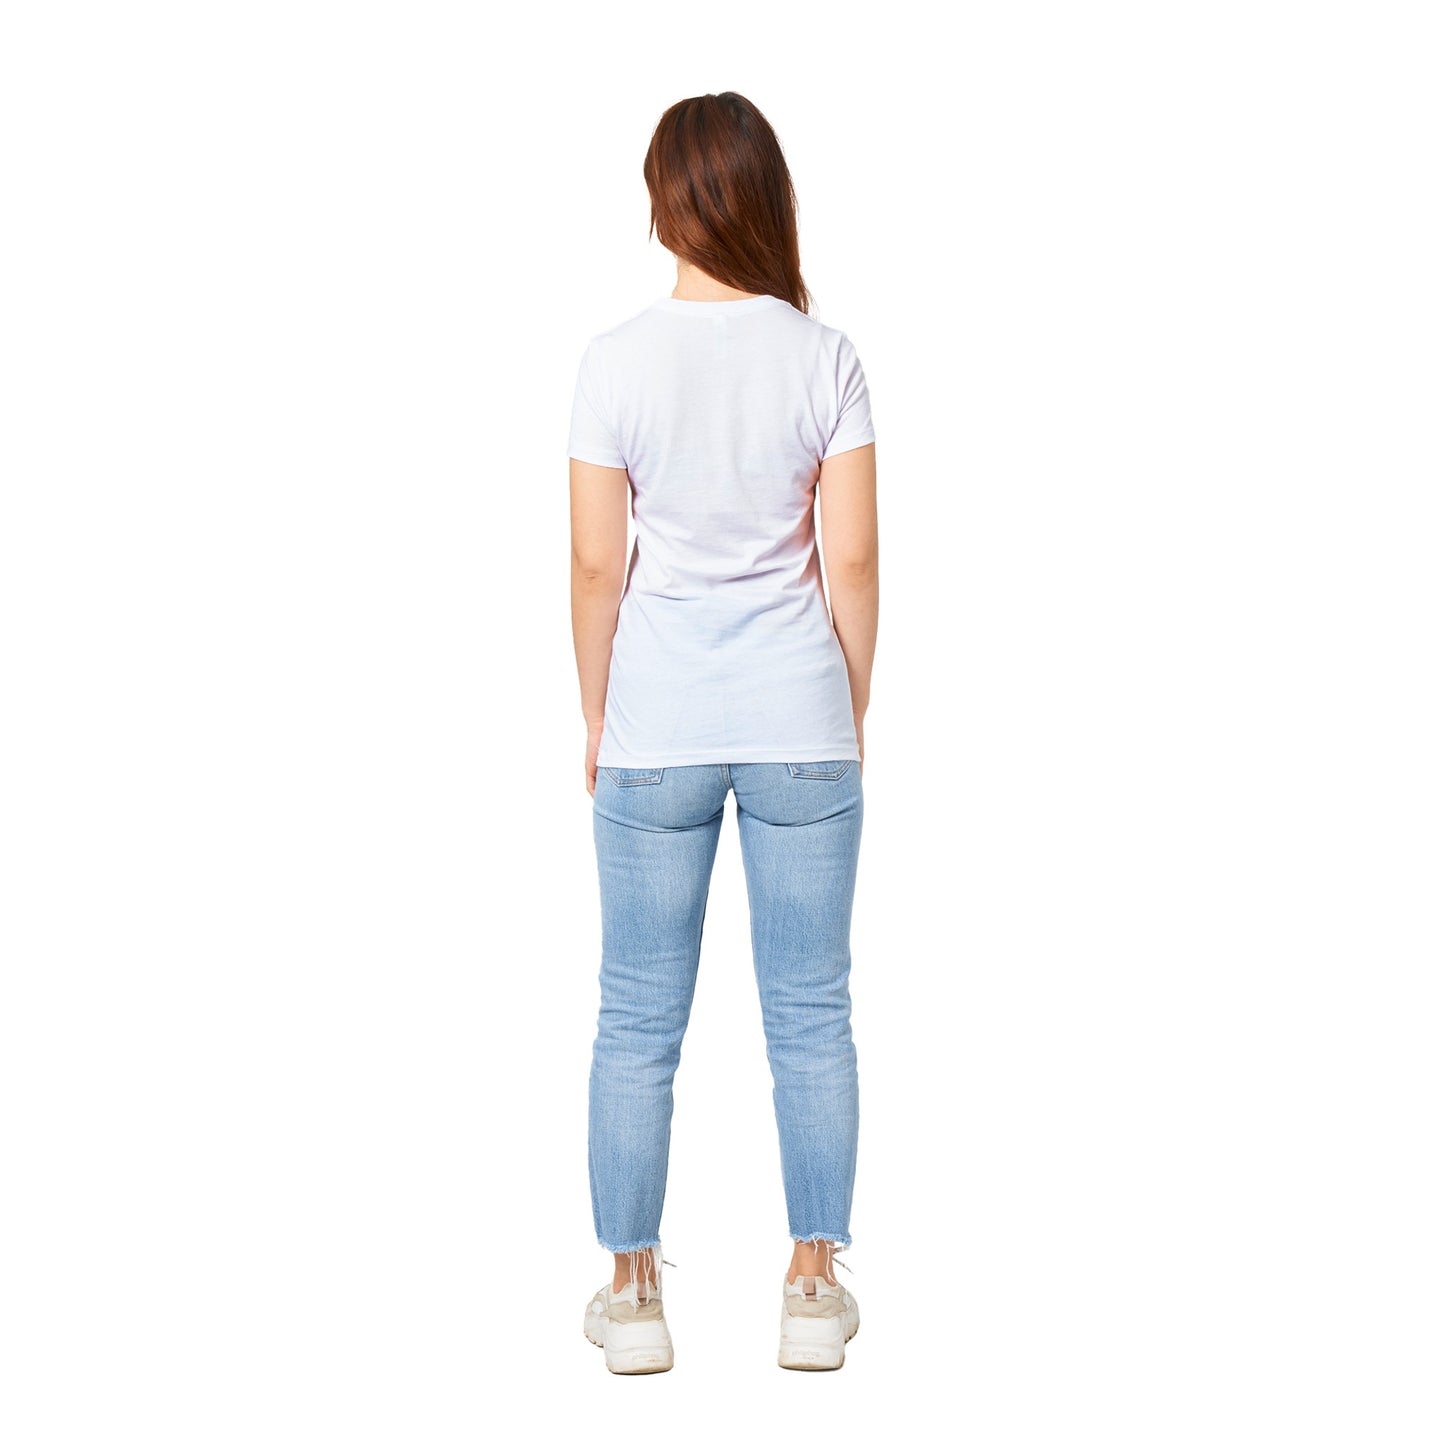 Women's Crewneck T-shirt - Age Limits